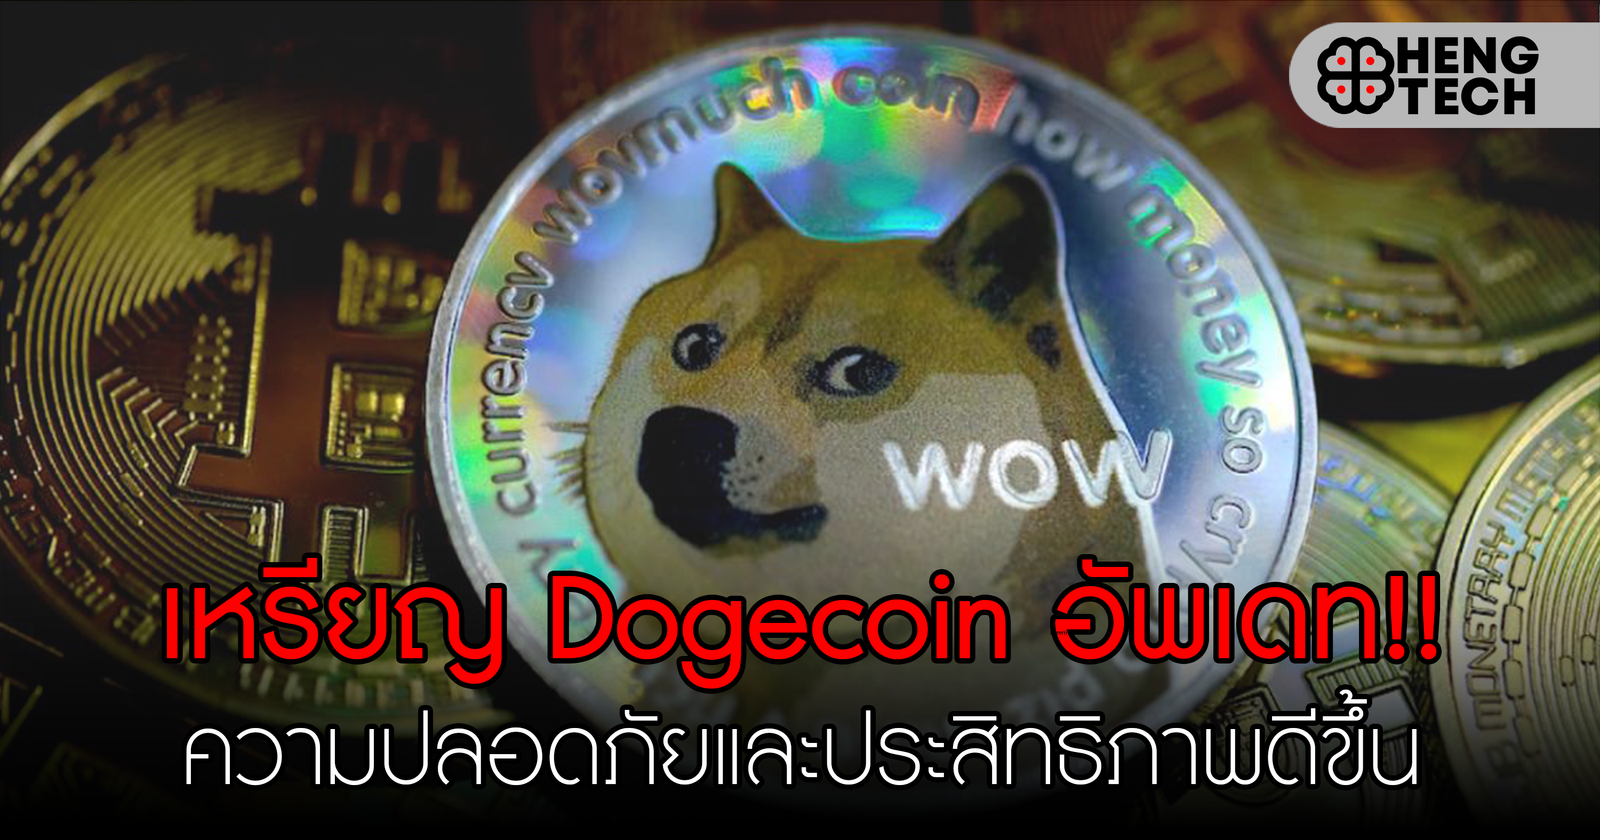 Dogecoin อัพเดท!! ความปลอดภัยและประสิทธิภาพที่ดีขึ้น